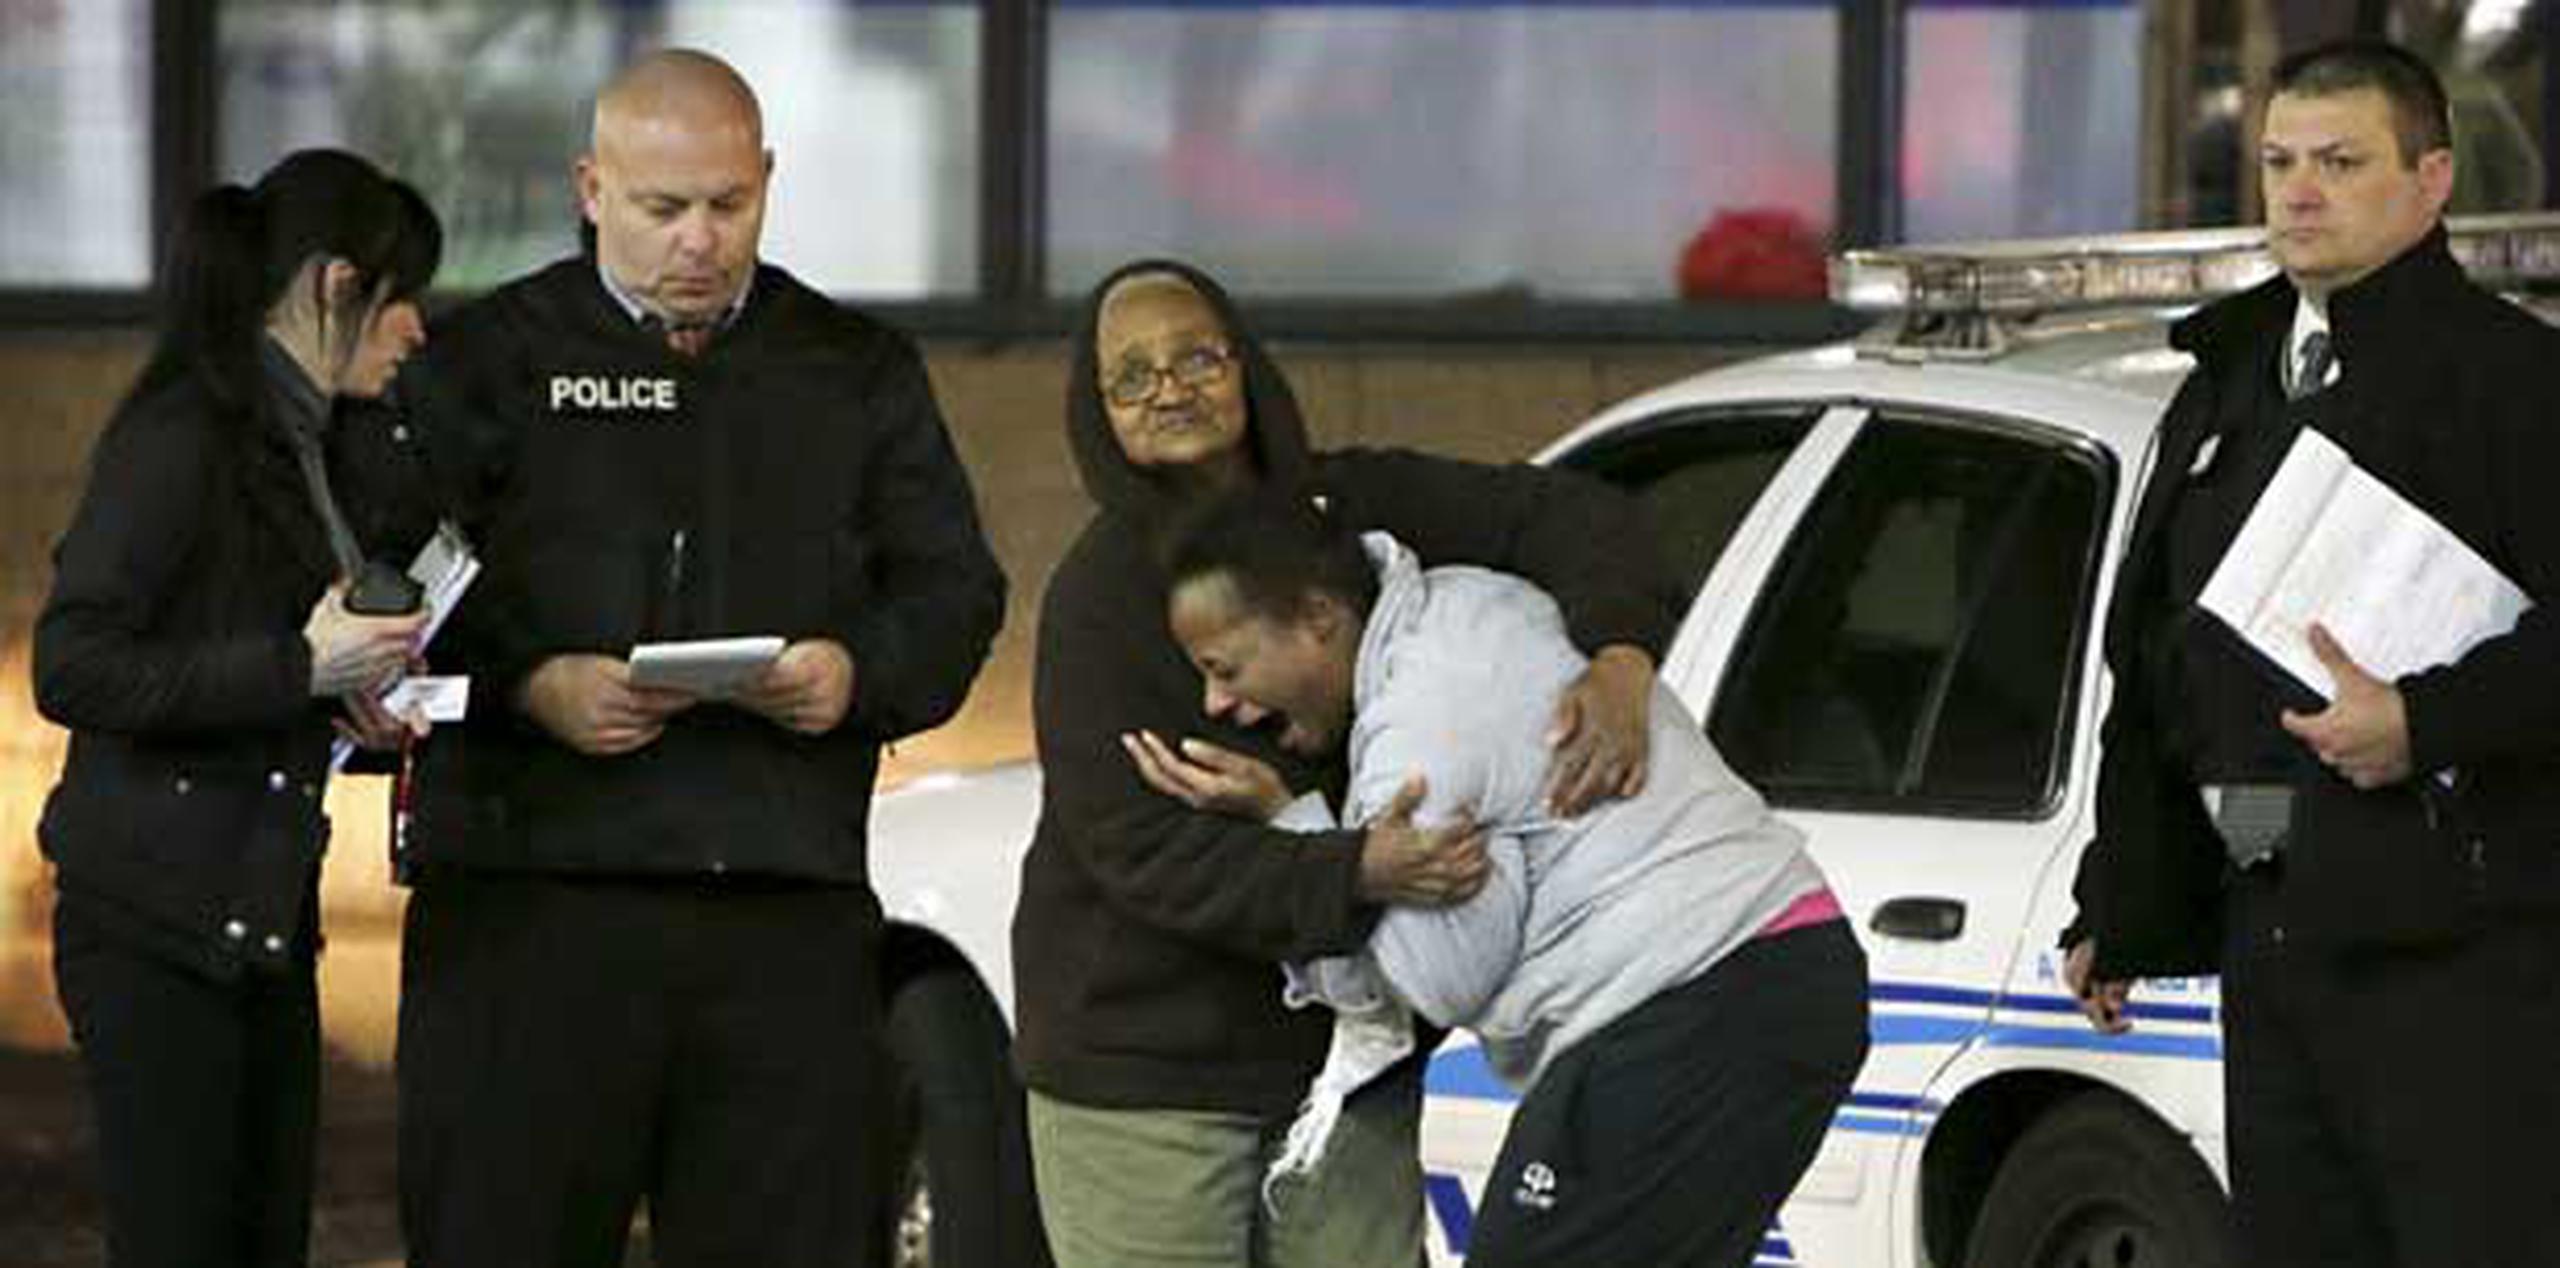 Toni Martin, madre del joven, llegó a la escena e identificó a su hijo. (AP Photo/St. Louis Post-Dispatch, David Carson)